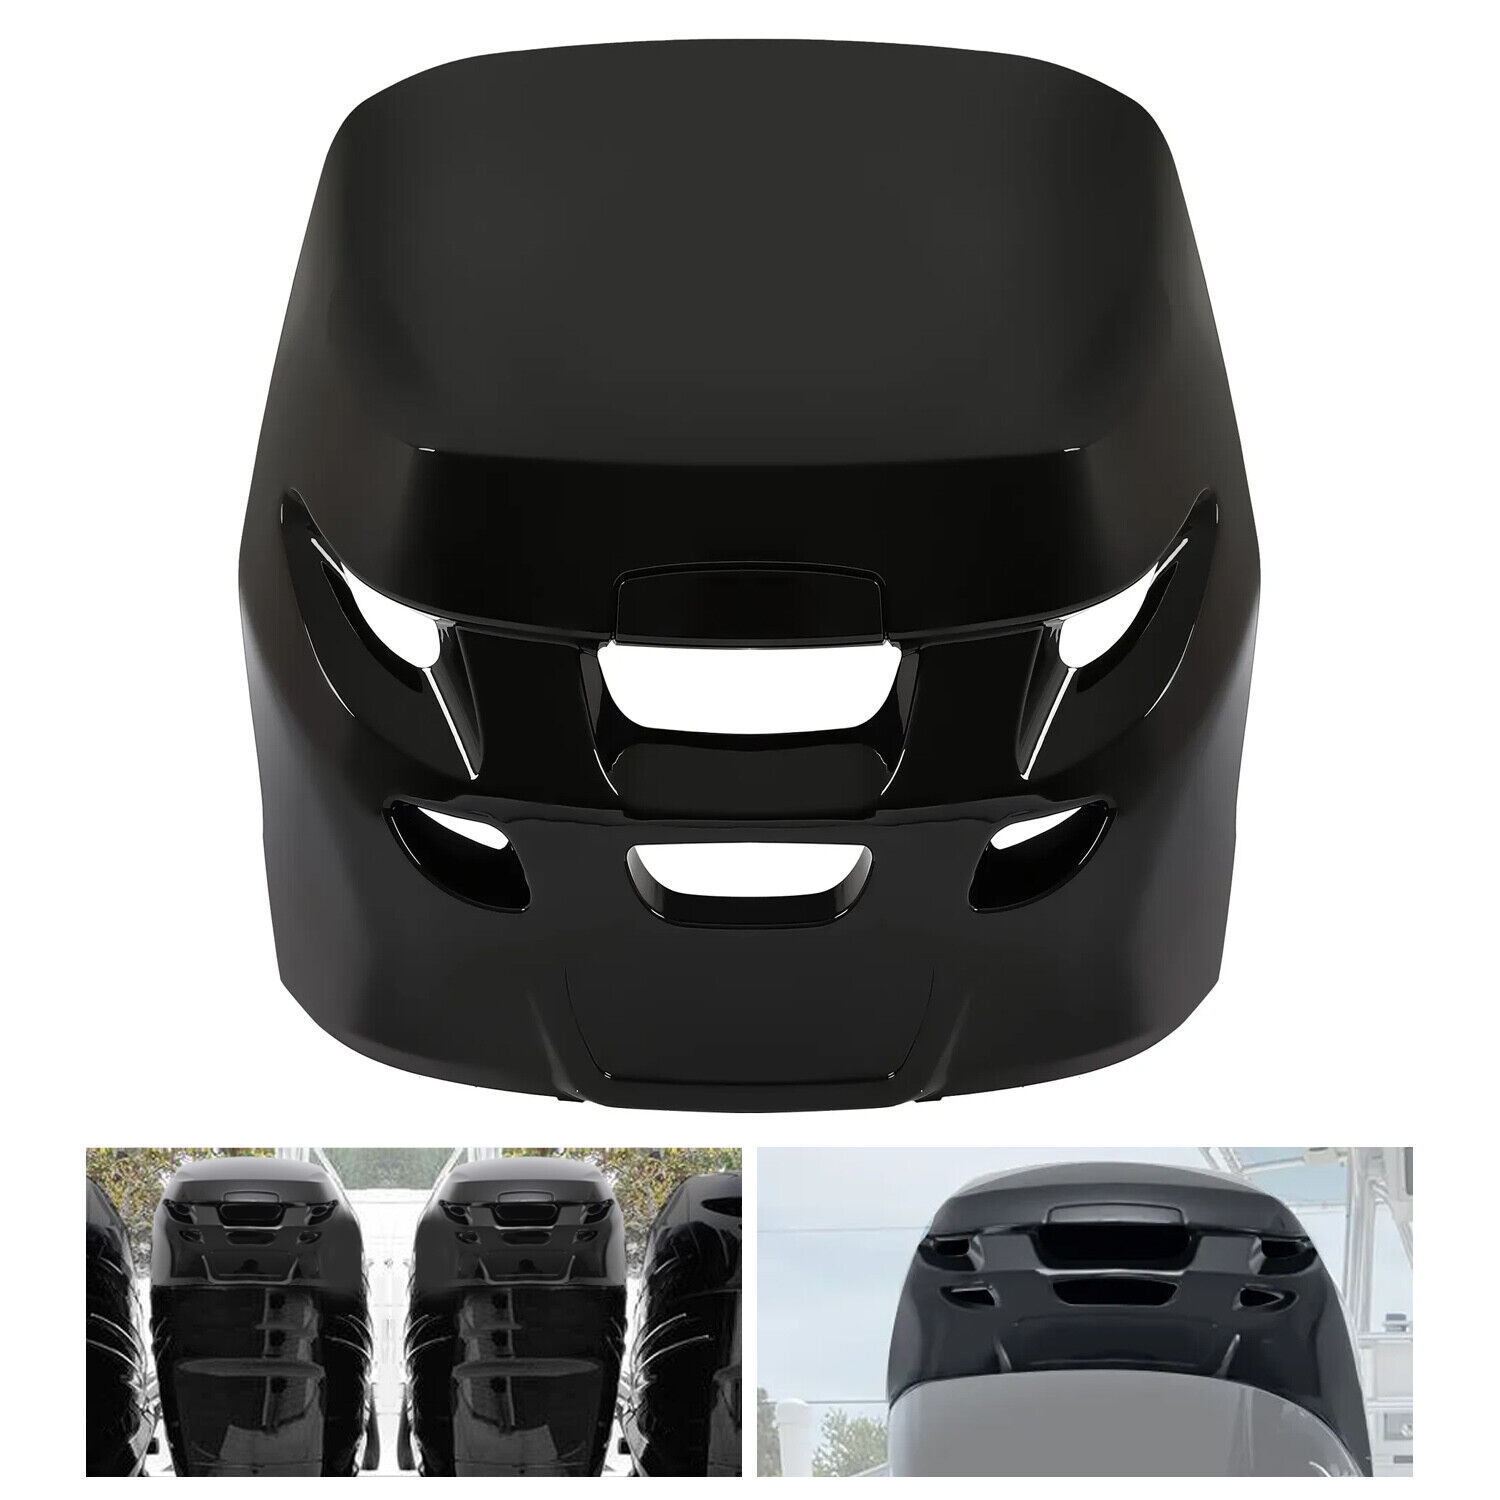 New Black Top Cowling Airdam Cap For Verado #885354T01 Air Dam Cap